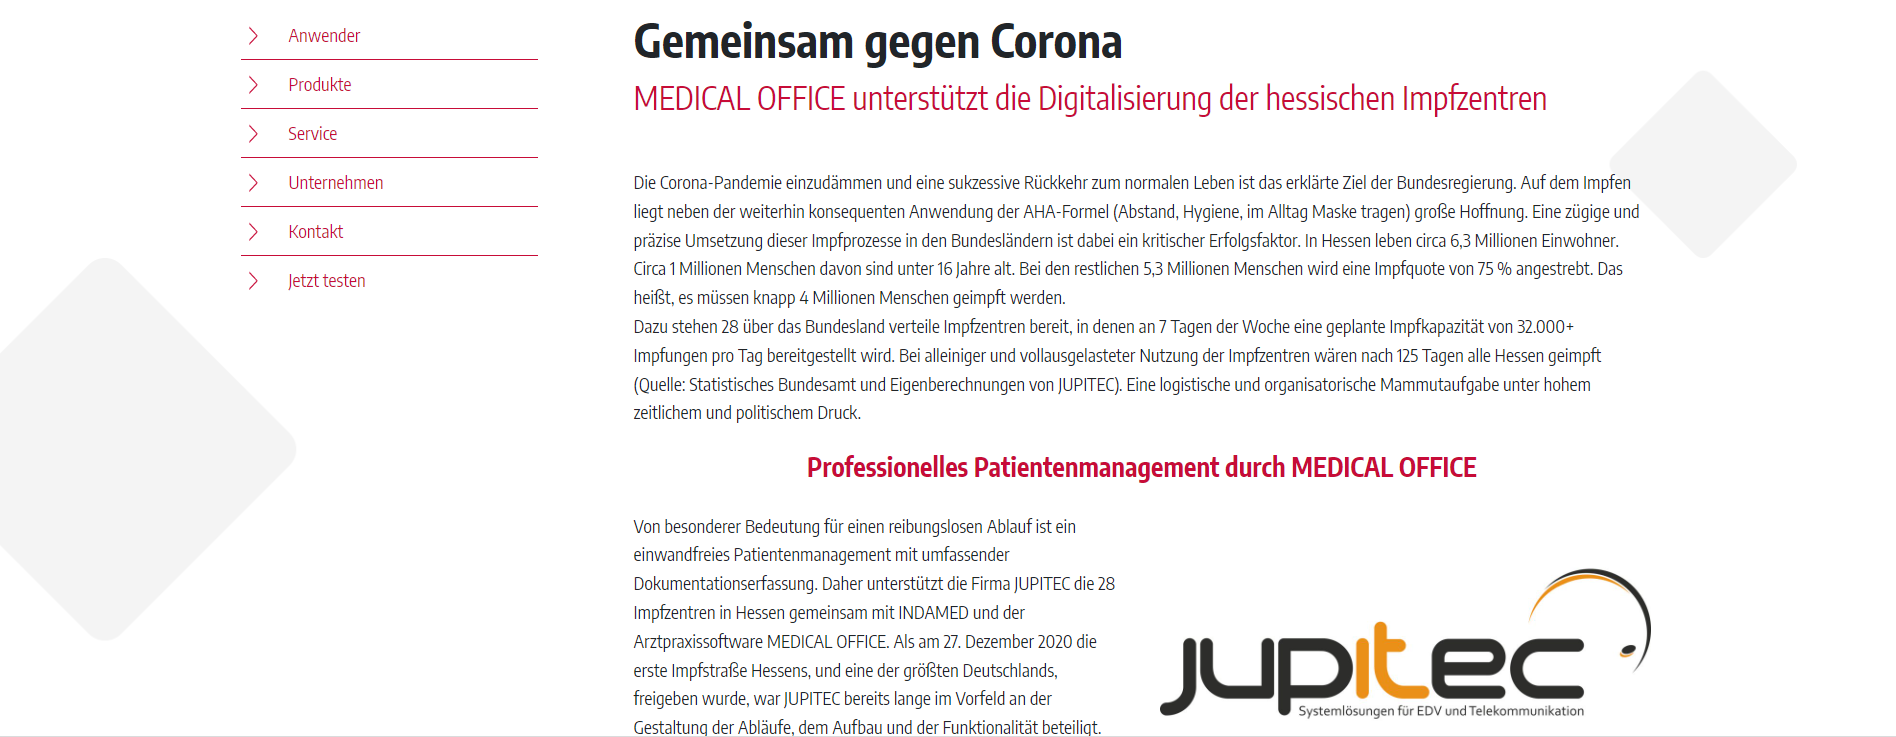 Pressebericht | Indamed - MEDICAL OFFICE - Praxissoftware | Jupitec